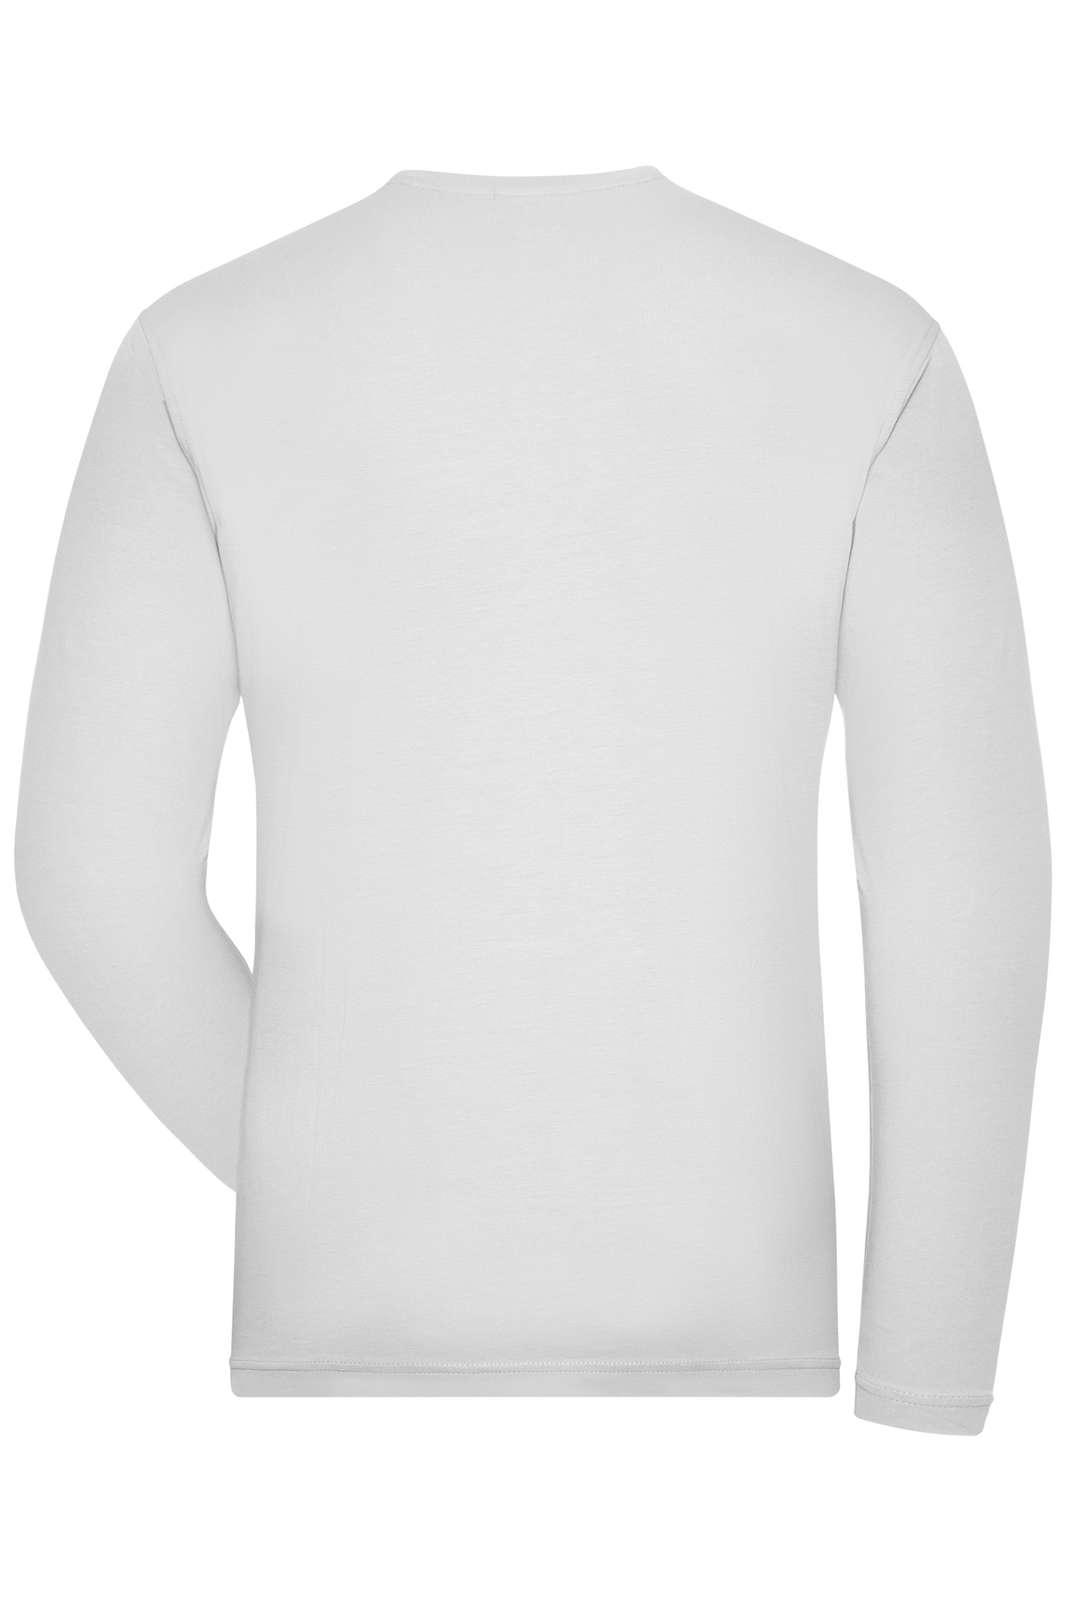 JN BIO STRETCH LS T-SHIRT - Langærmet T-Shirt - JA Profil 